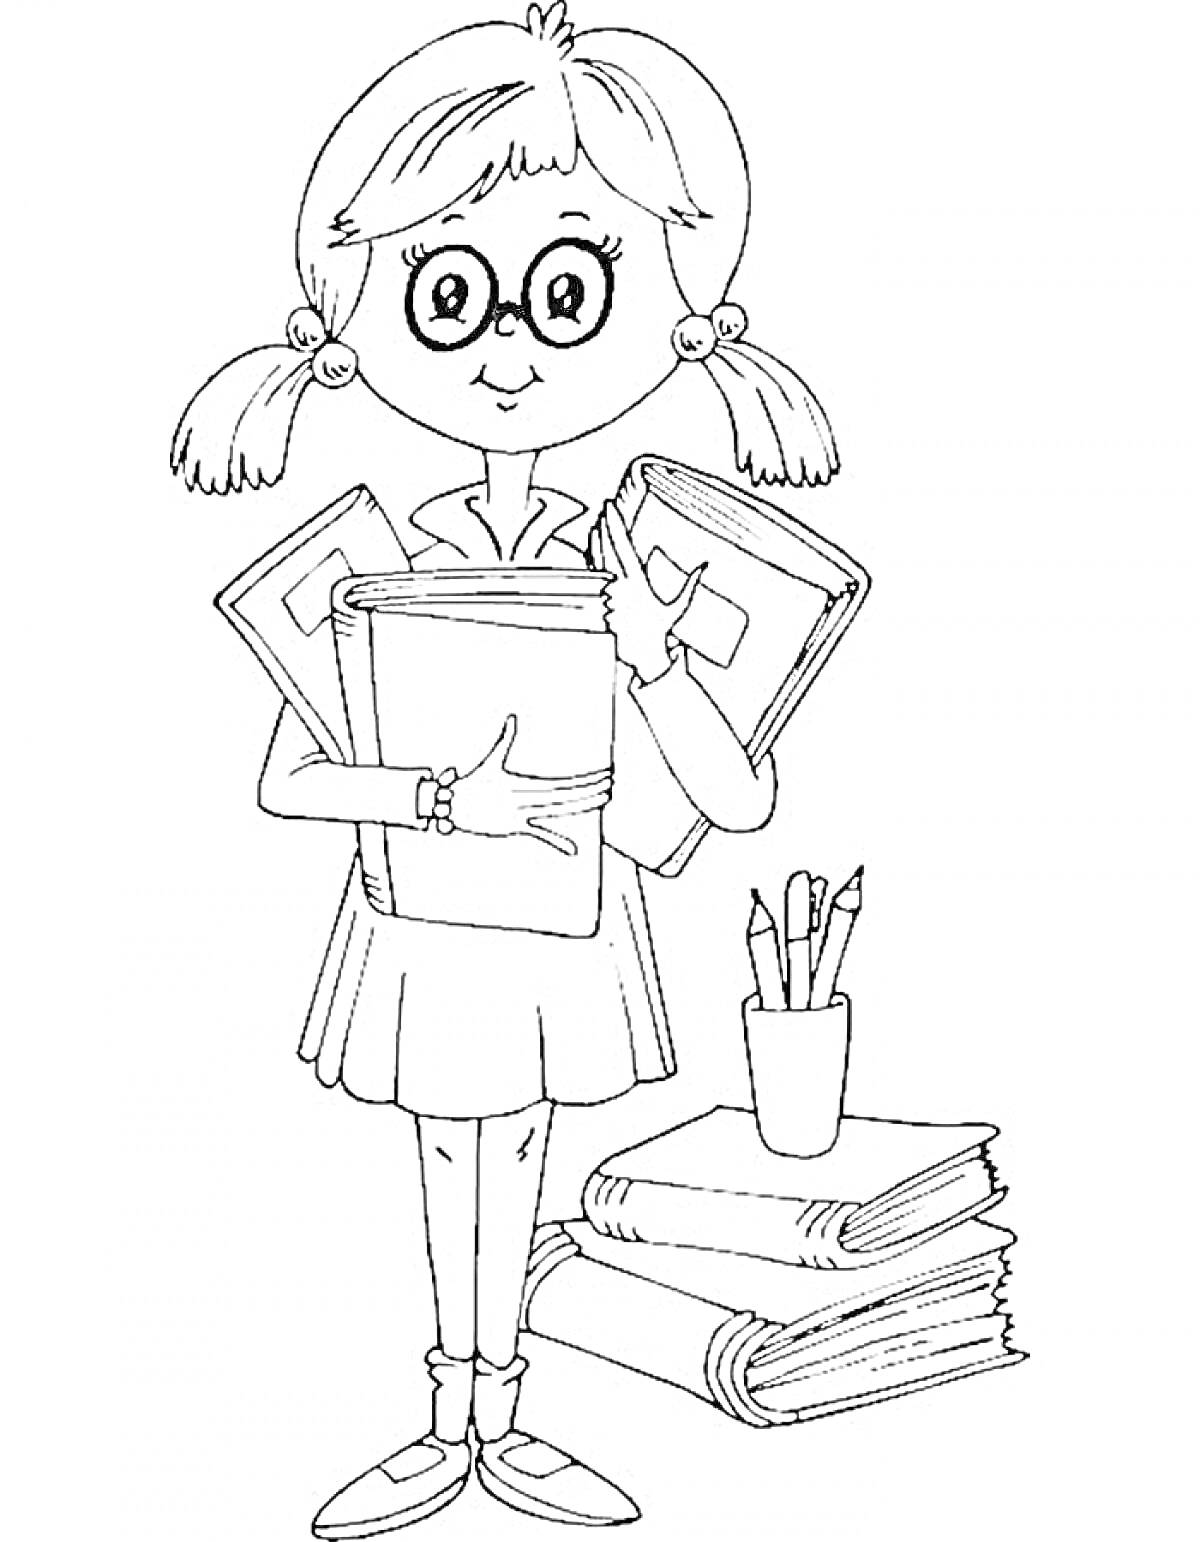 Раскраска Девочка в очках с книгами и тетрадями, карандашница с карандашами, стопка книг